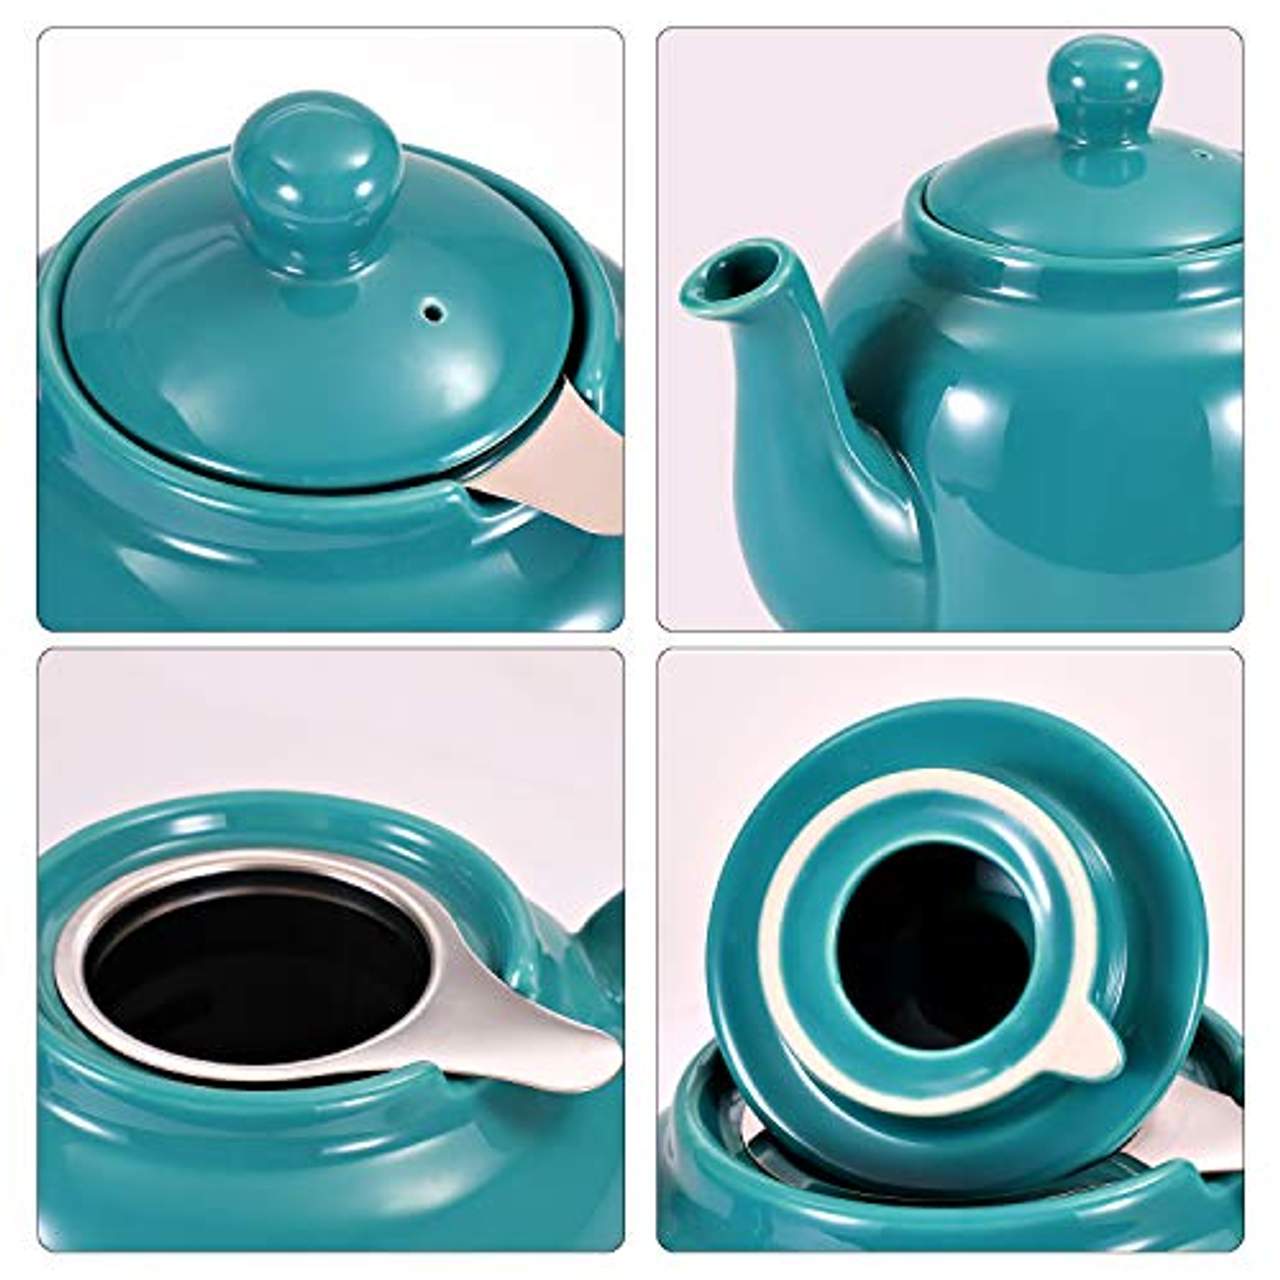 Urban Lifestyle Teekanne Teapot Klassisch Englische Form aus Keramik Oxford 1,2L